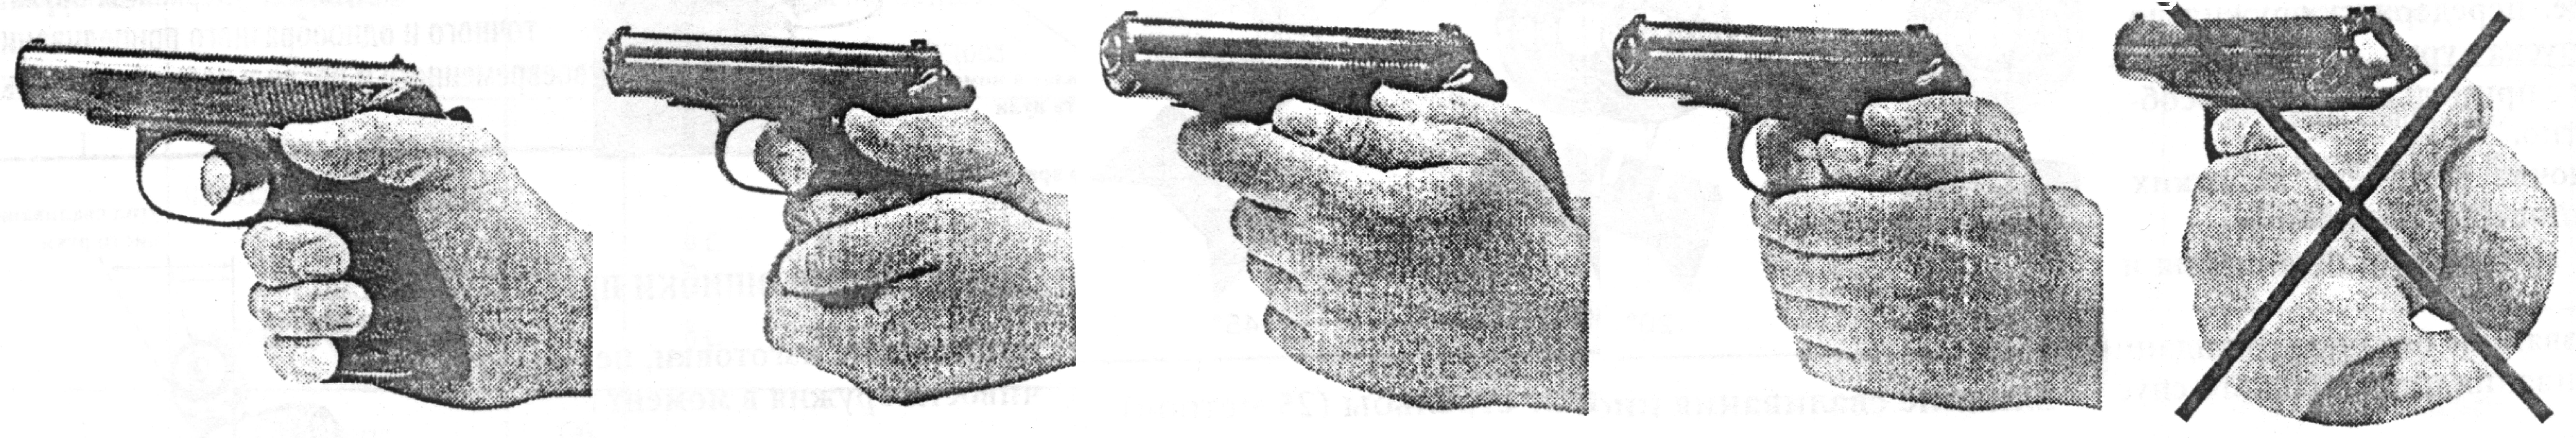 Техники пм. Правильный хват пистолета Макарова. Хват пистолета ПМ двумя руками. Правильный хват пистолета Макарова двумя руками. Правильный хват пистолета Макарова двумя.